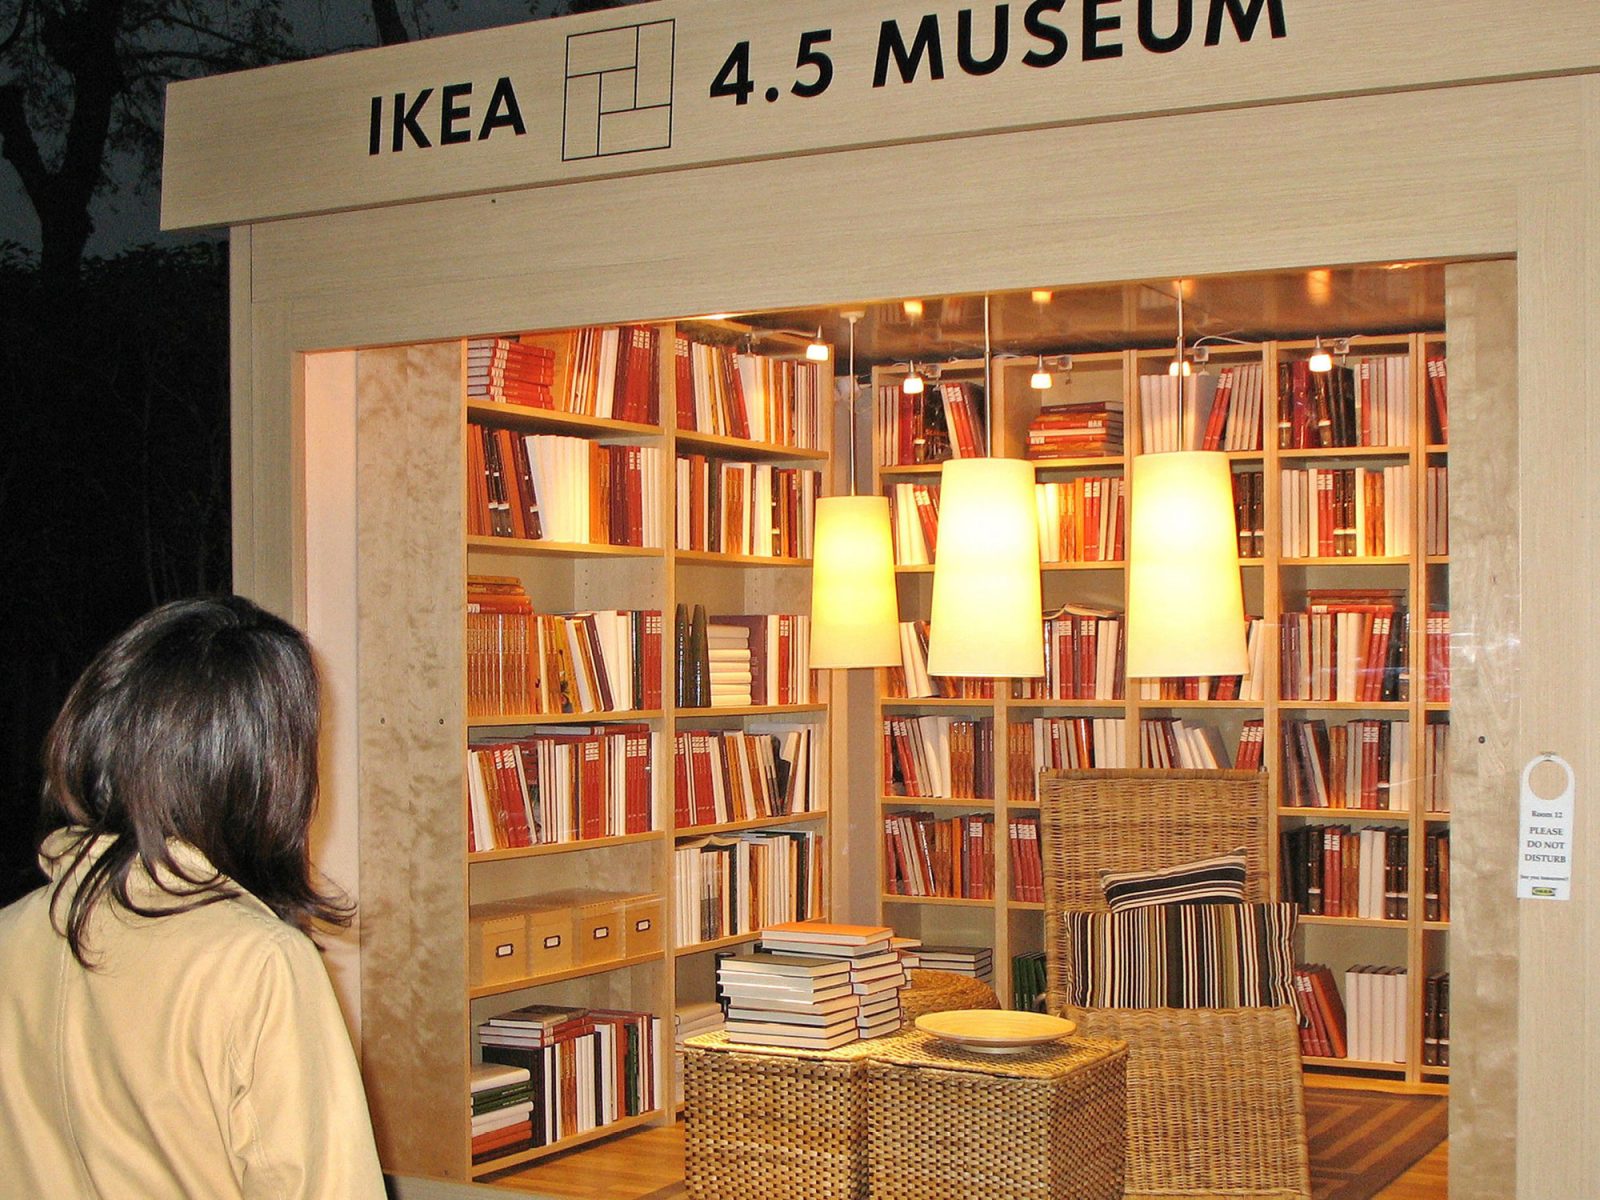 Uppbyggd rumsinteriör i trä, med bokhyllor längs väggarna och små korgmöbler. Text vid ingången lyder IKEA 4,5 MUSEUM.